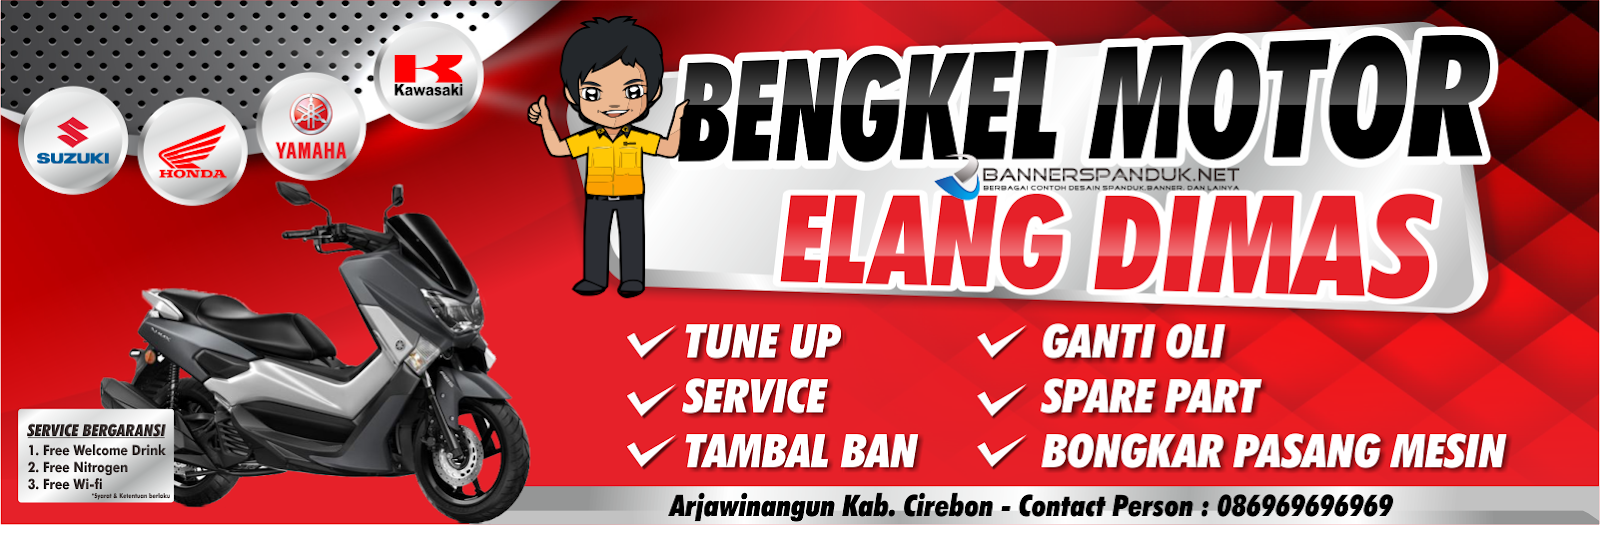 Banner Spanduk Bengkel Motor Elang Dimas Keren CDR 